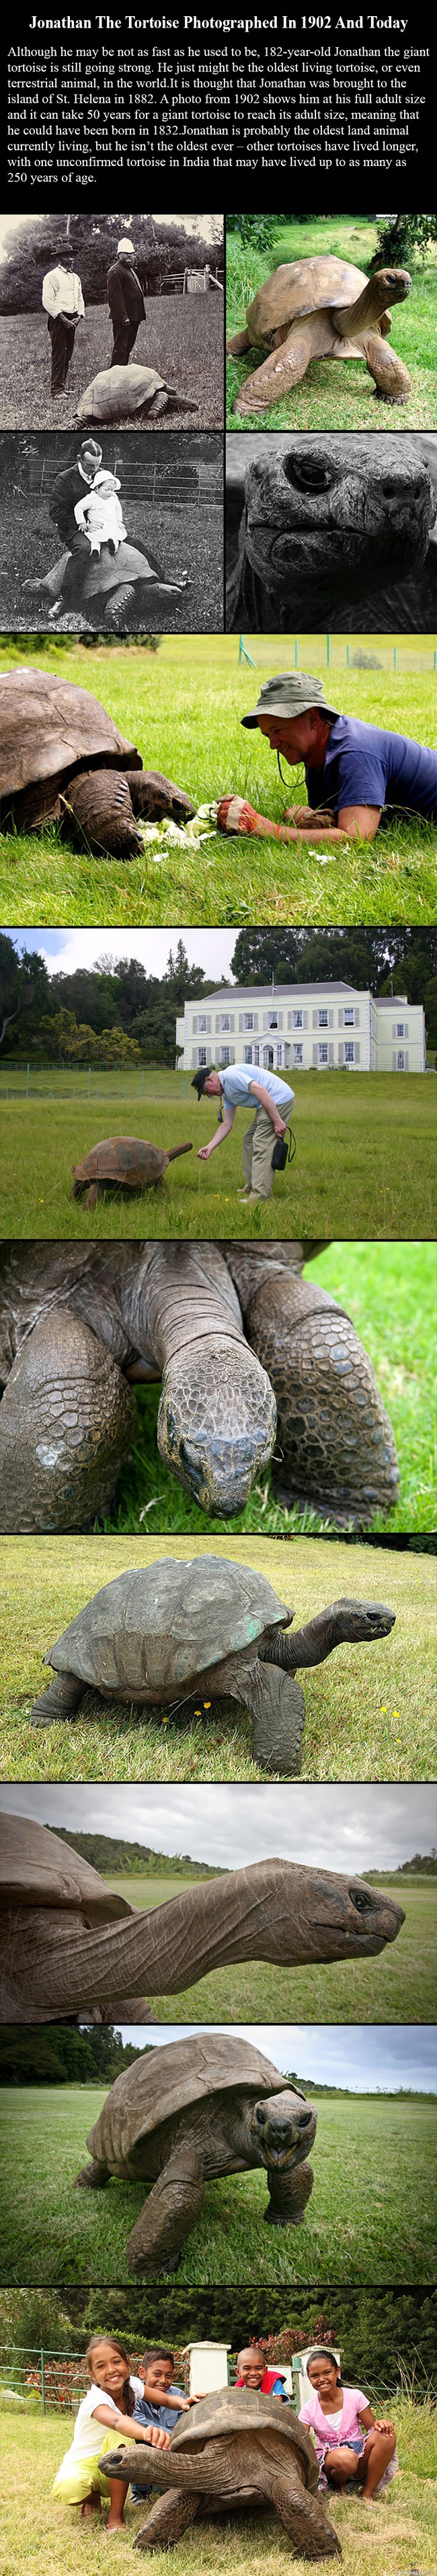 Jonathan Kilpikonna - Jättiläiskilpikonna Jonathan on jo 182-vuotias ja vieläkin porskuttaa menemään pirteänä.

http://www.boredpanda.com/182-year-old-tortoise-jonathan/